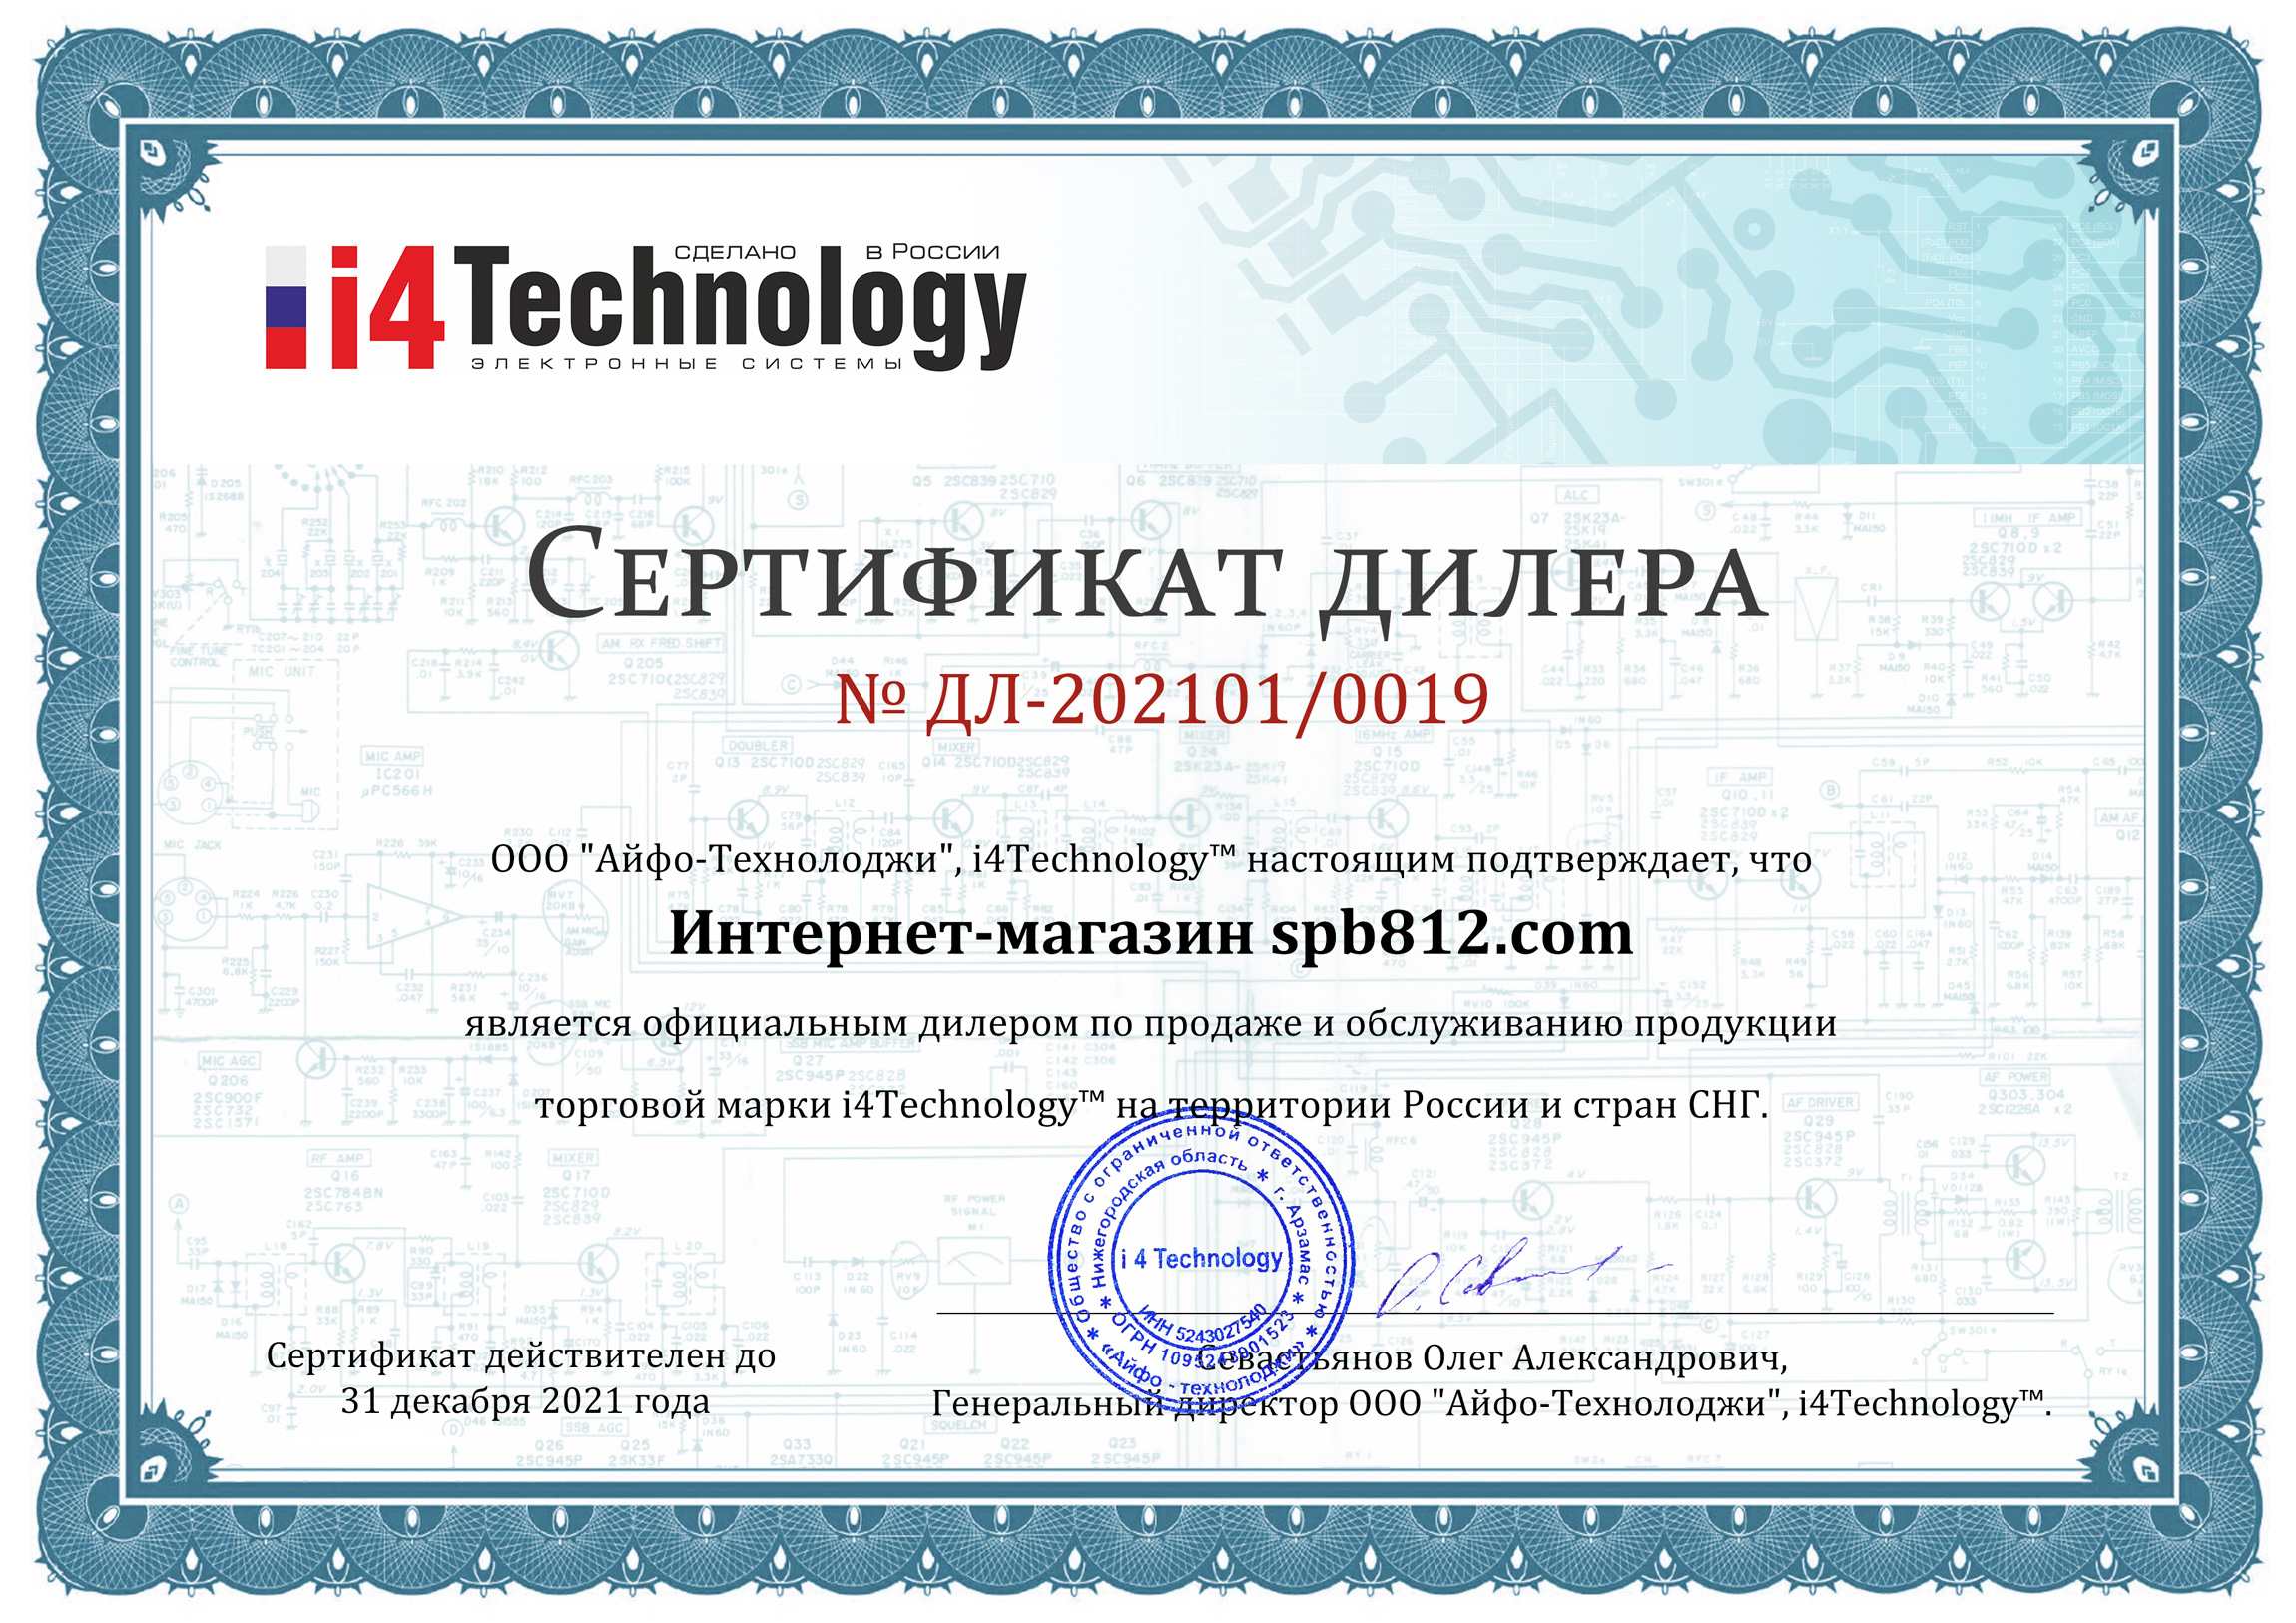 Сертификат дилера на продажу и обслуживание продукции компании i4technology в России и СНГ